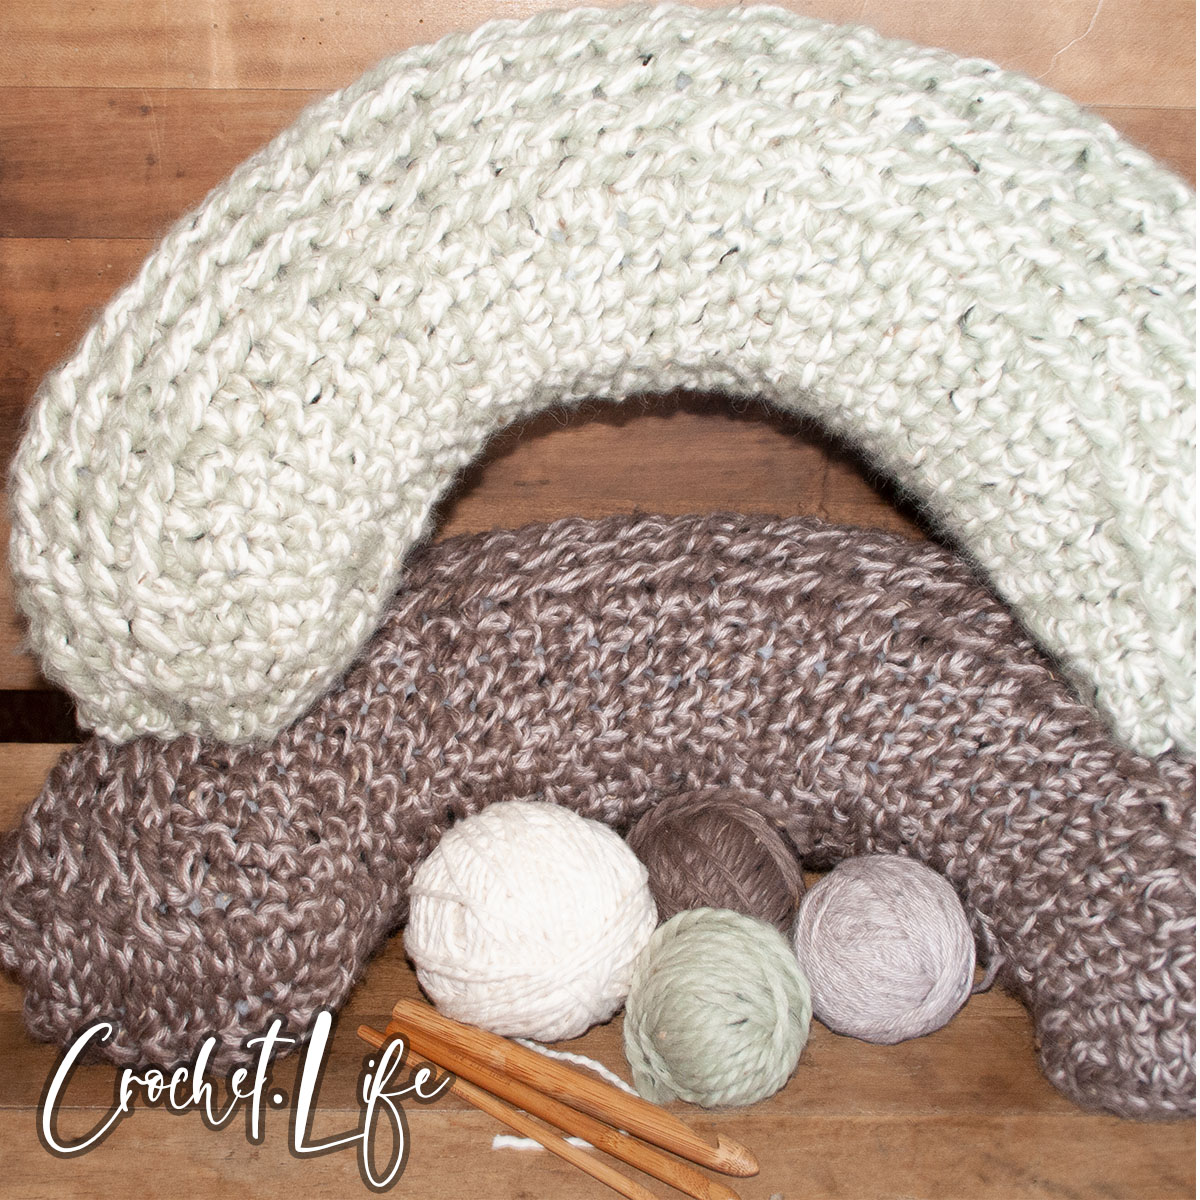 crochet pillow pattern for travel